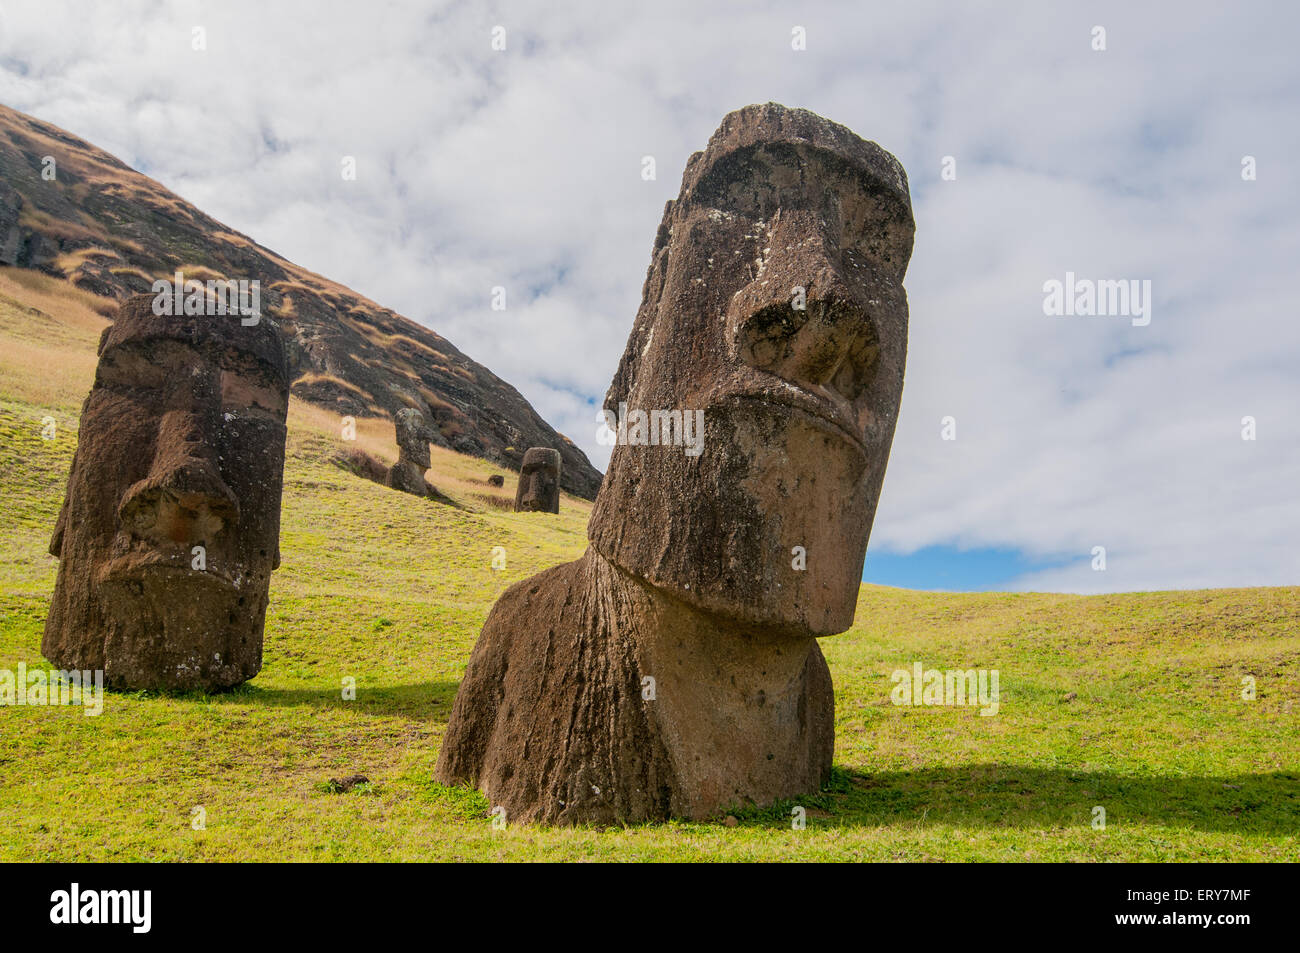 Moai statues on Easter Island Stock Photo